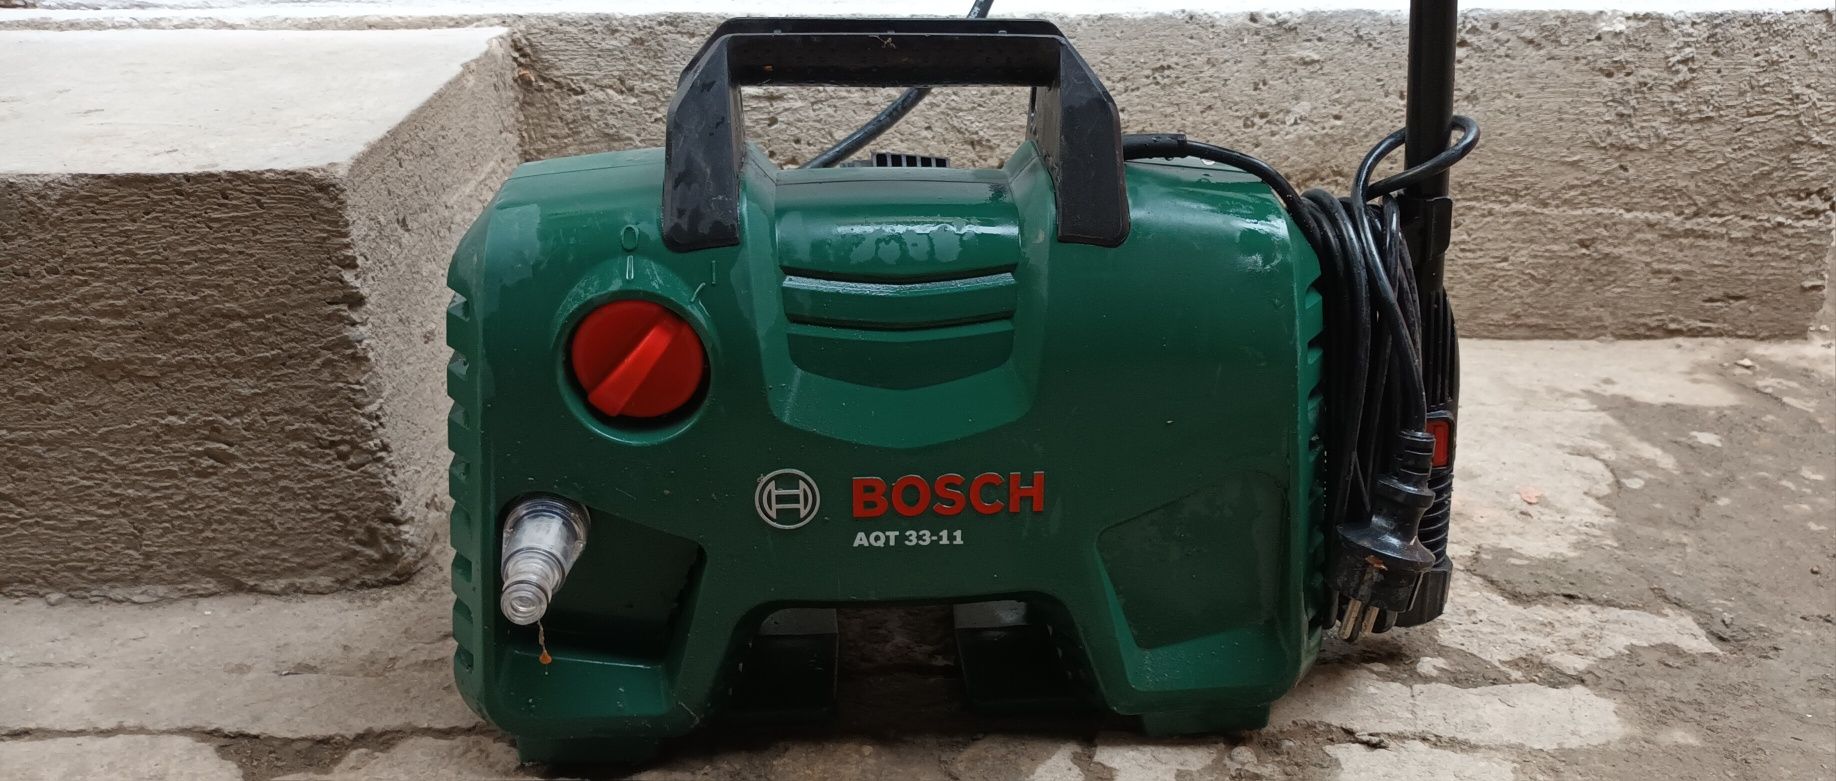 Aparatul de spalat cu presiune Bosch